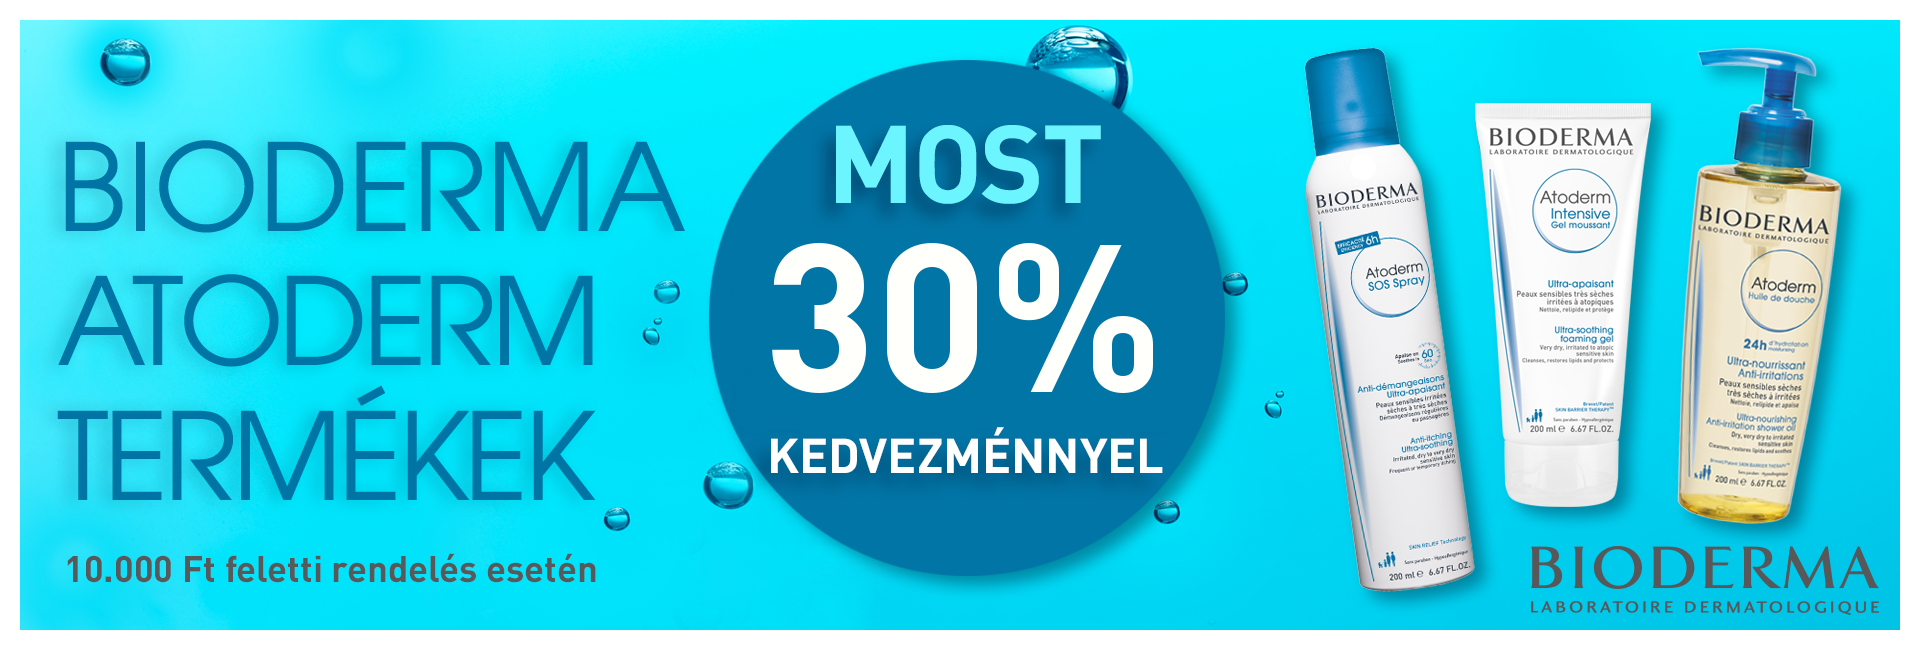 2020. február 10-17. között a Bioderma Atoderm termékeket 25% kedvezménnyel kínáljuk! 